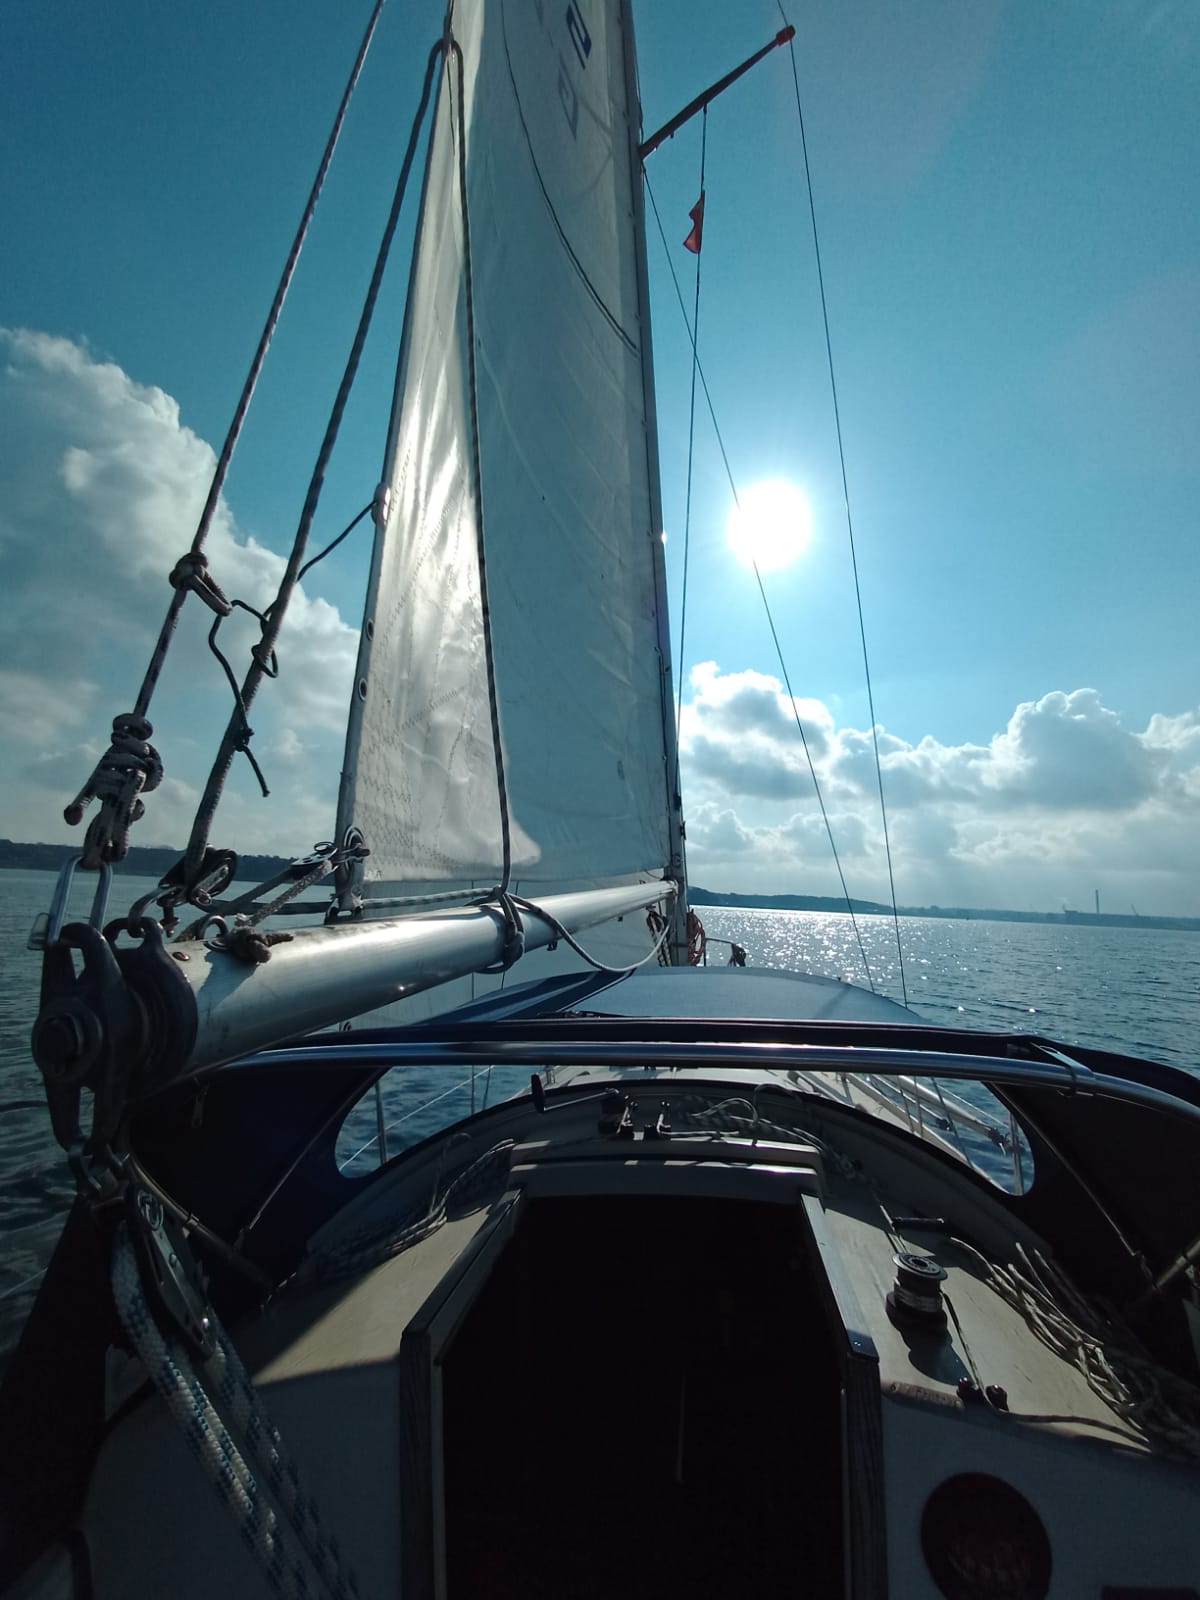 Just sailing ⛵🌞